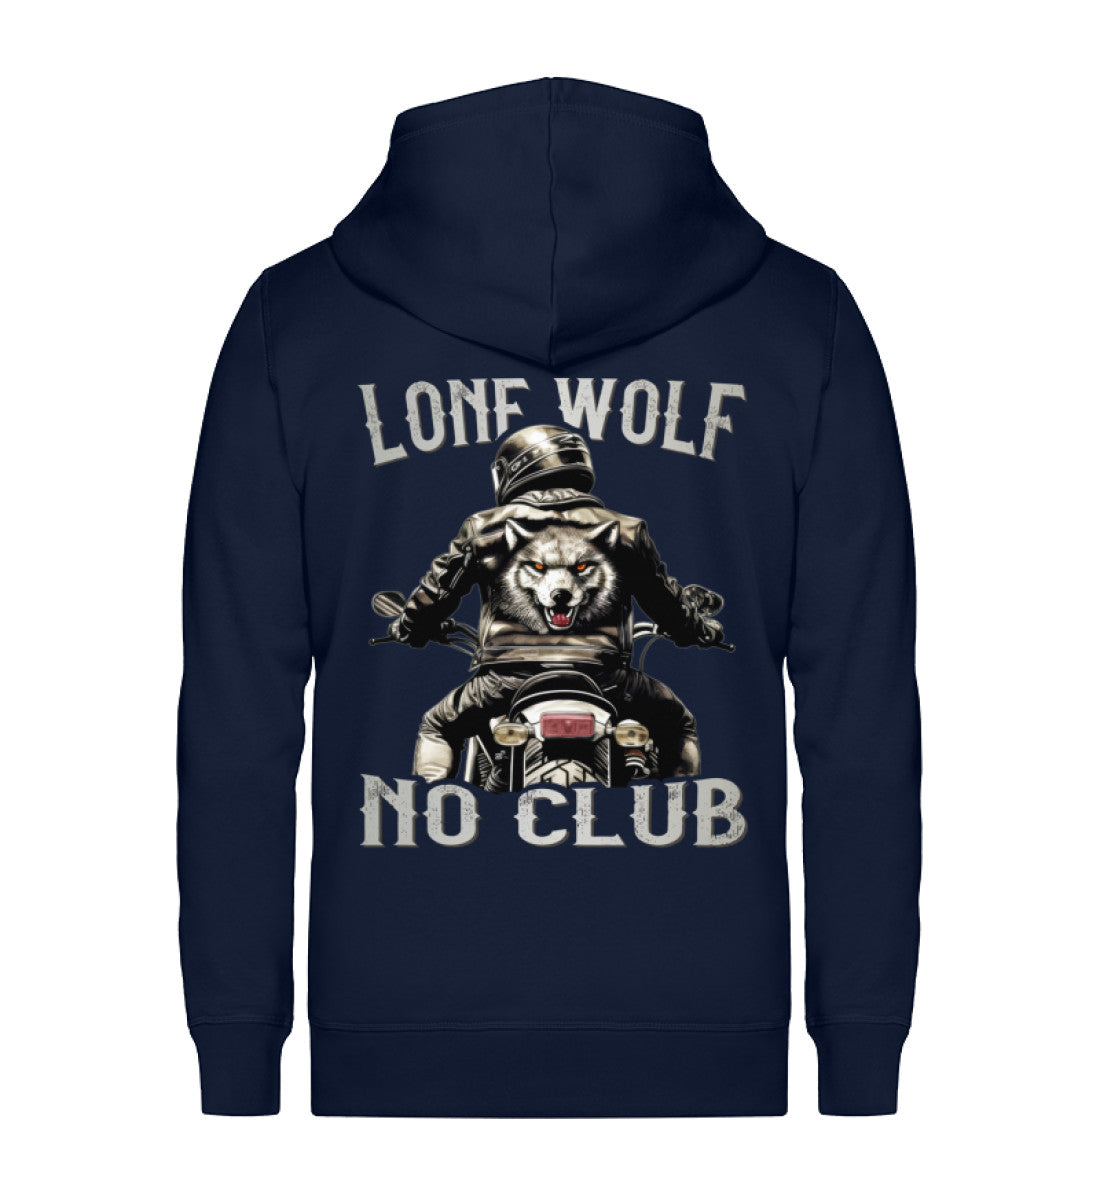 Eine Reißverschluss-Jacke für Motorradfahrer von Wingbikers mit dem Aufdruck, Lone Wolf - No Club, in navy blau.